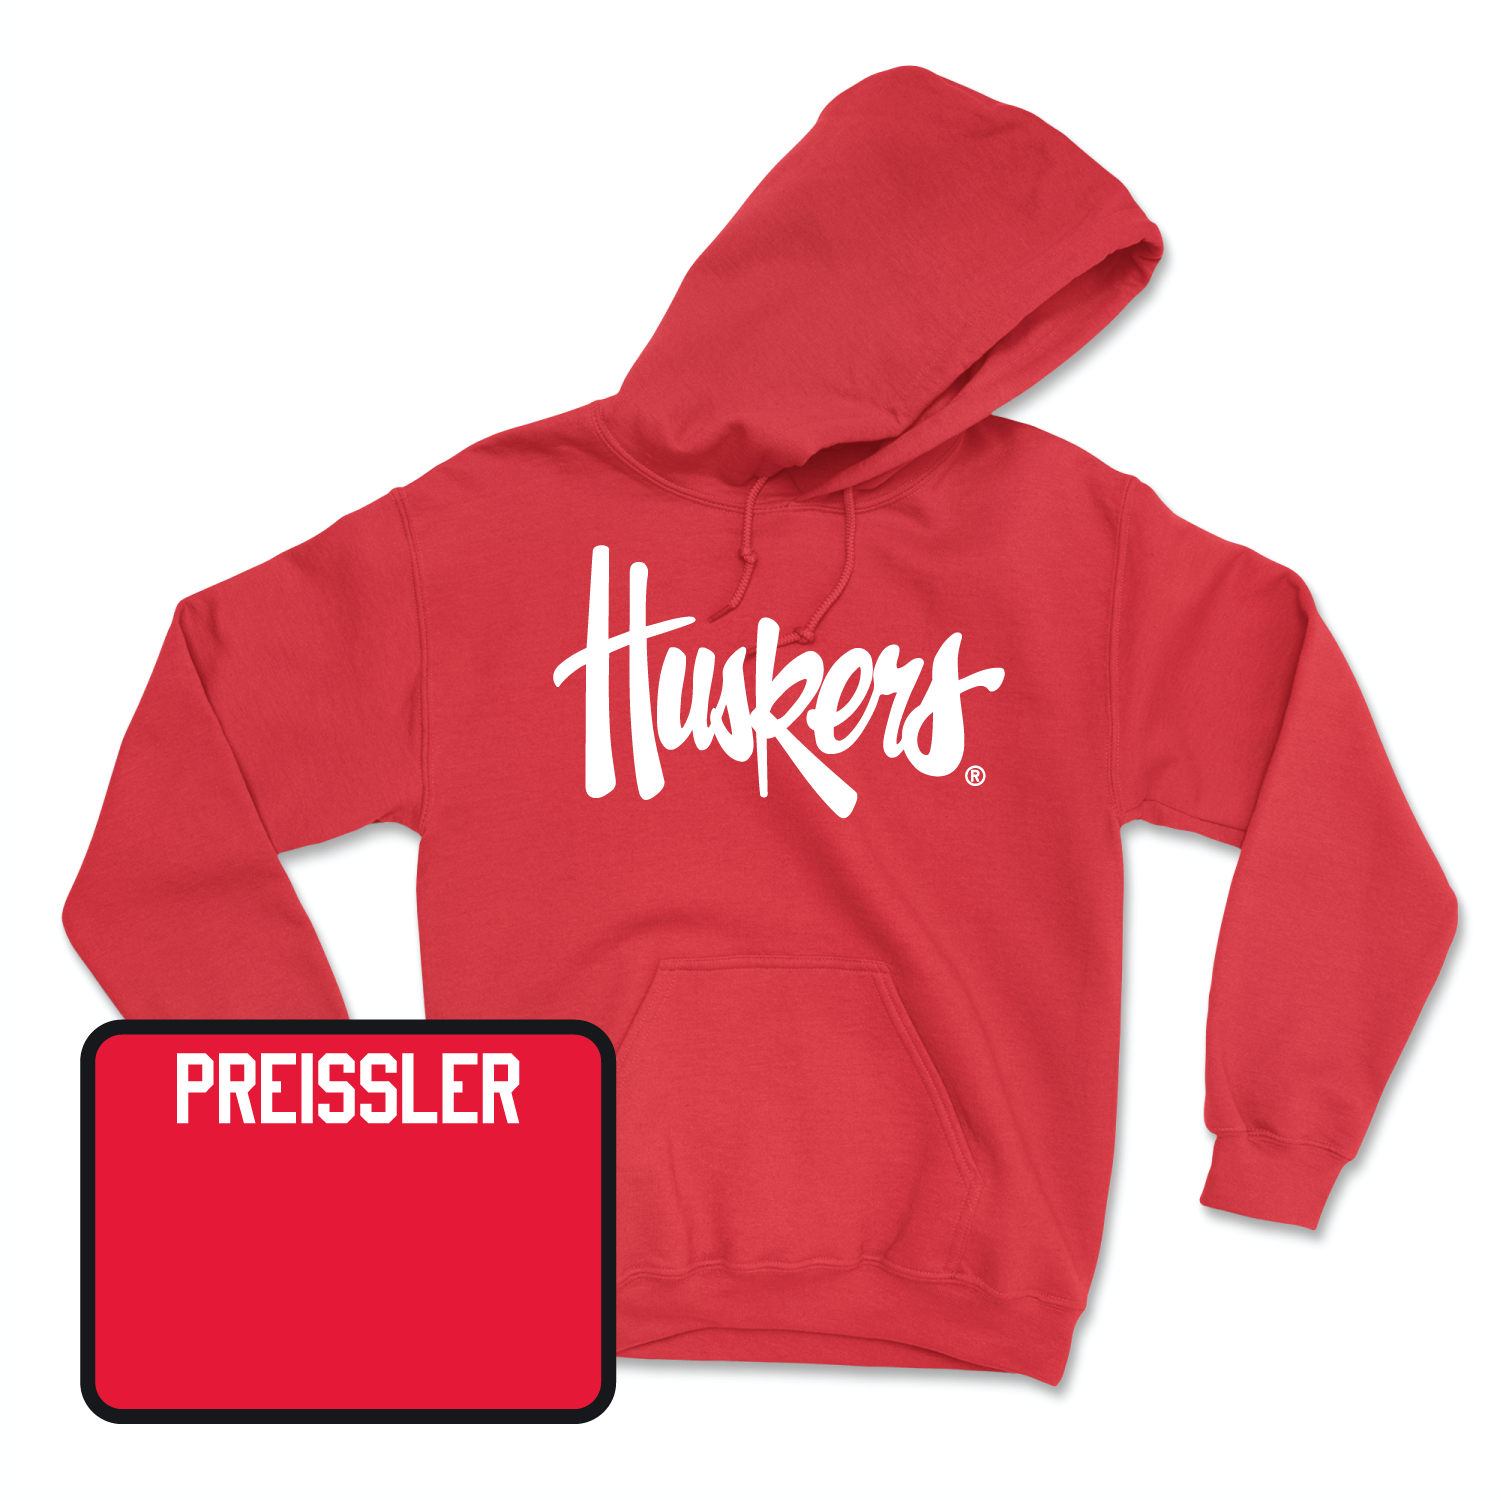 Red Track & Field Huskers Hoodie Large / Hannah Preissler